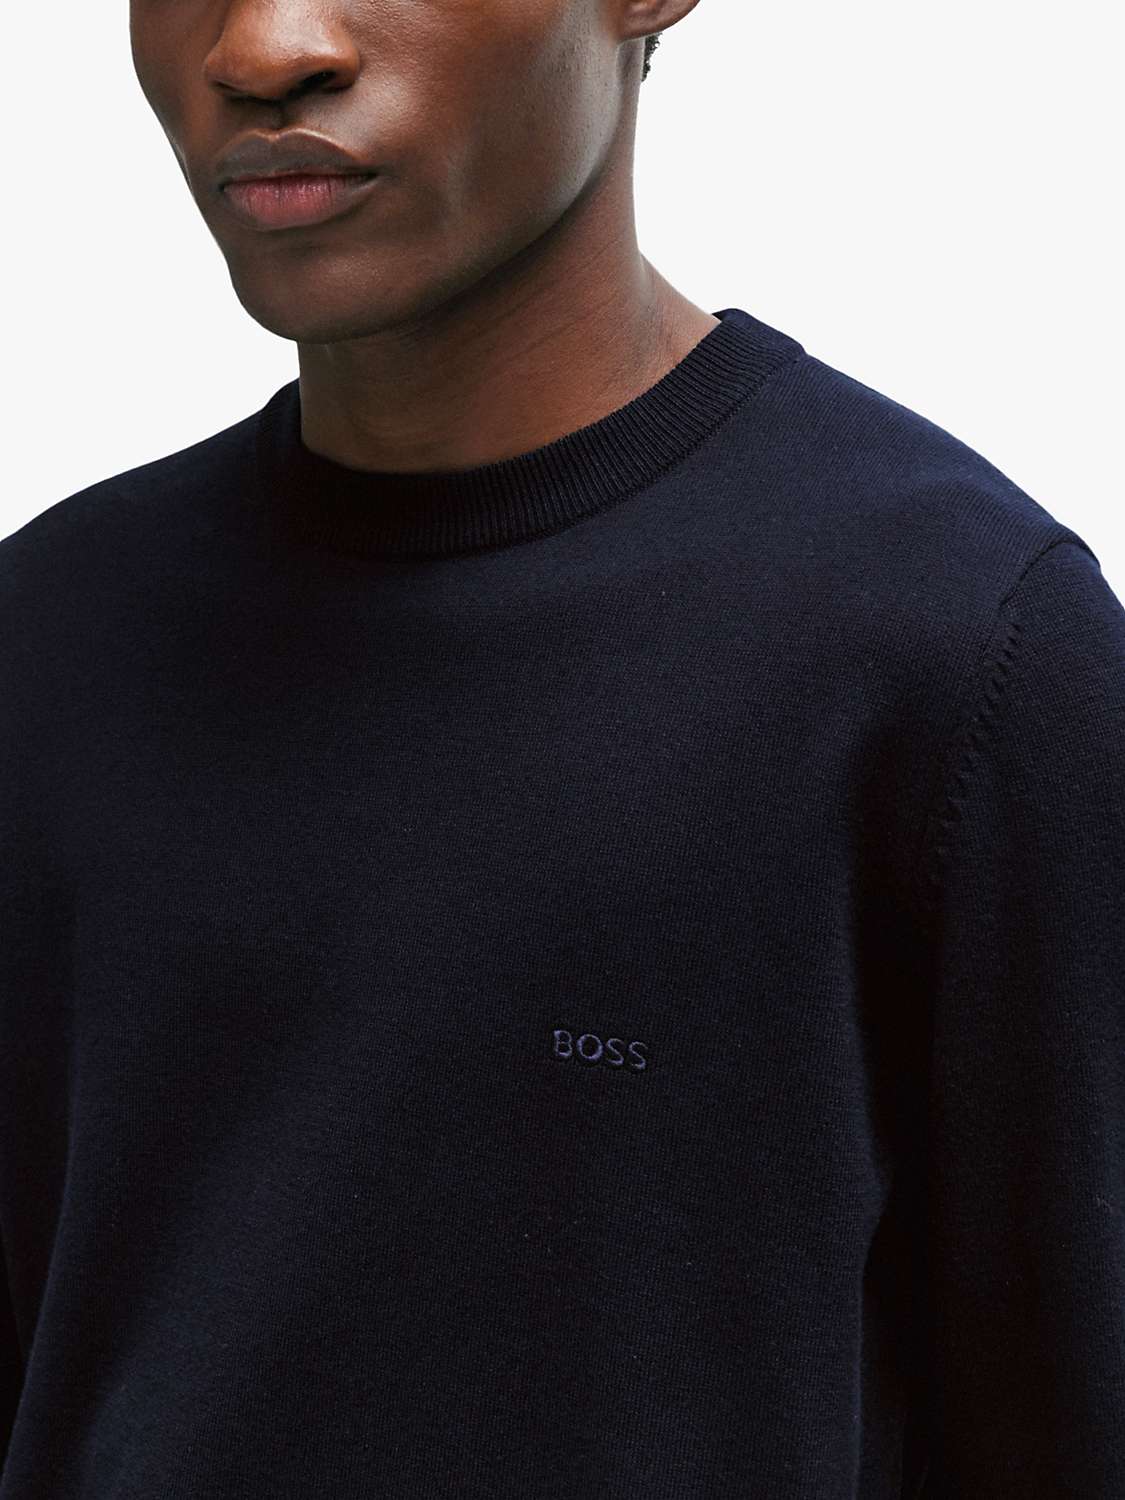 Buy BOSS Pacas Cotton Sweatshirt, Navy Online at johnlewis.com